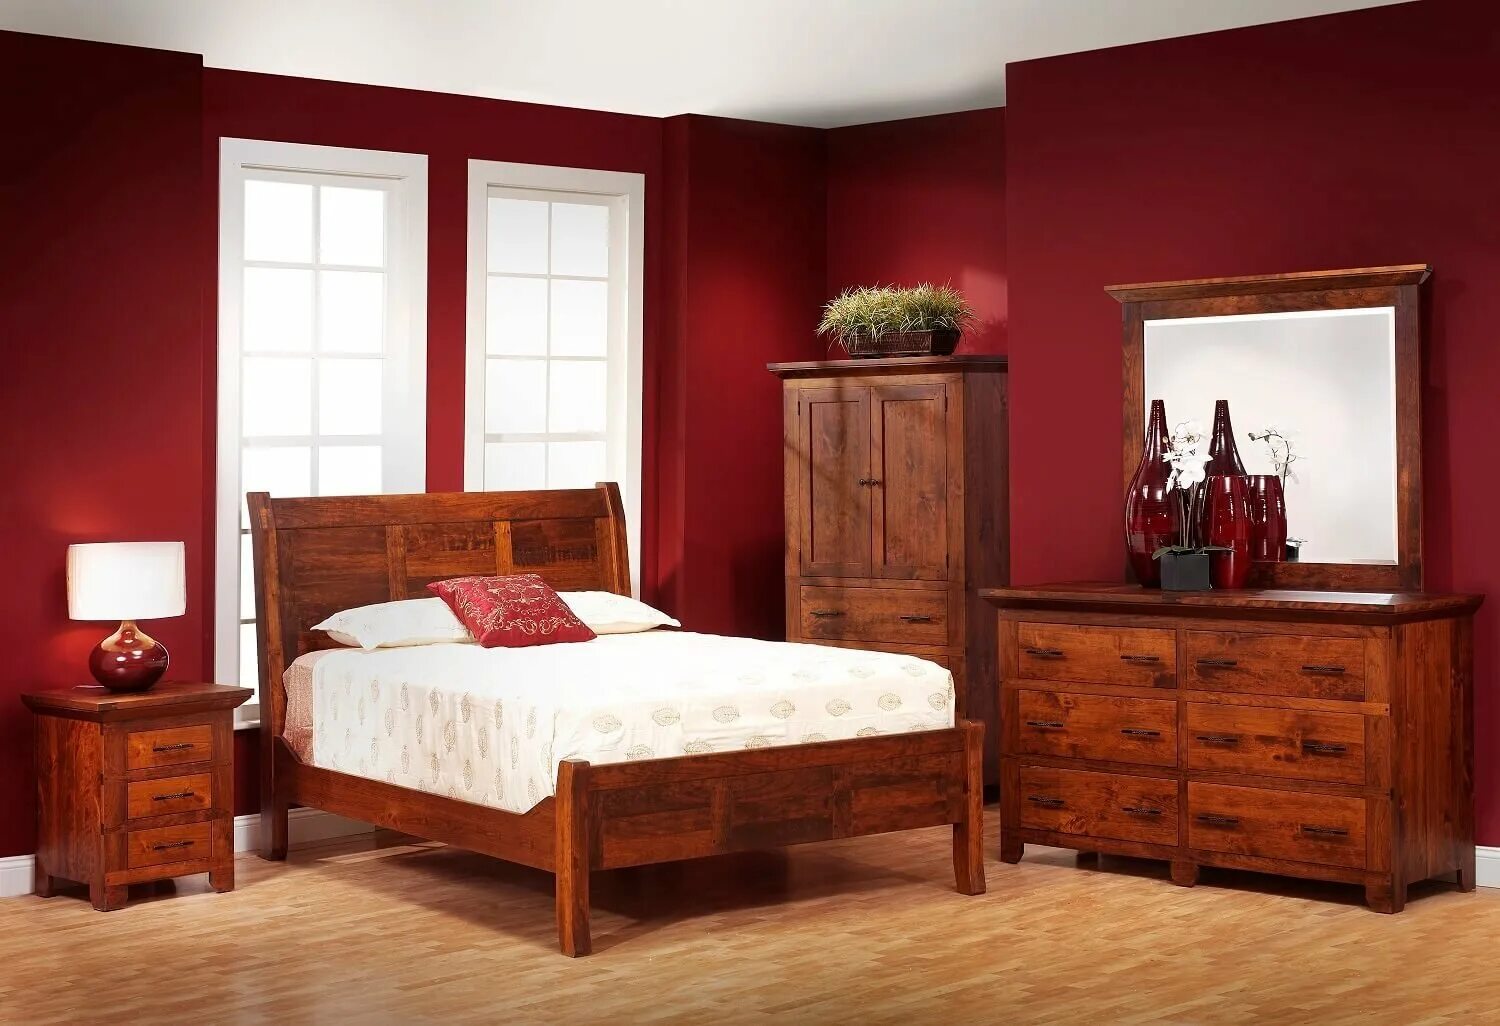 Фото цвета красное дерево. Мебель махагон вишня. Мебель красное дерево в интерьере. Спальня с мебелью красное дерево. Цвет вишня мебель.